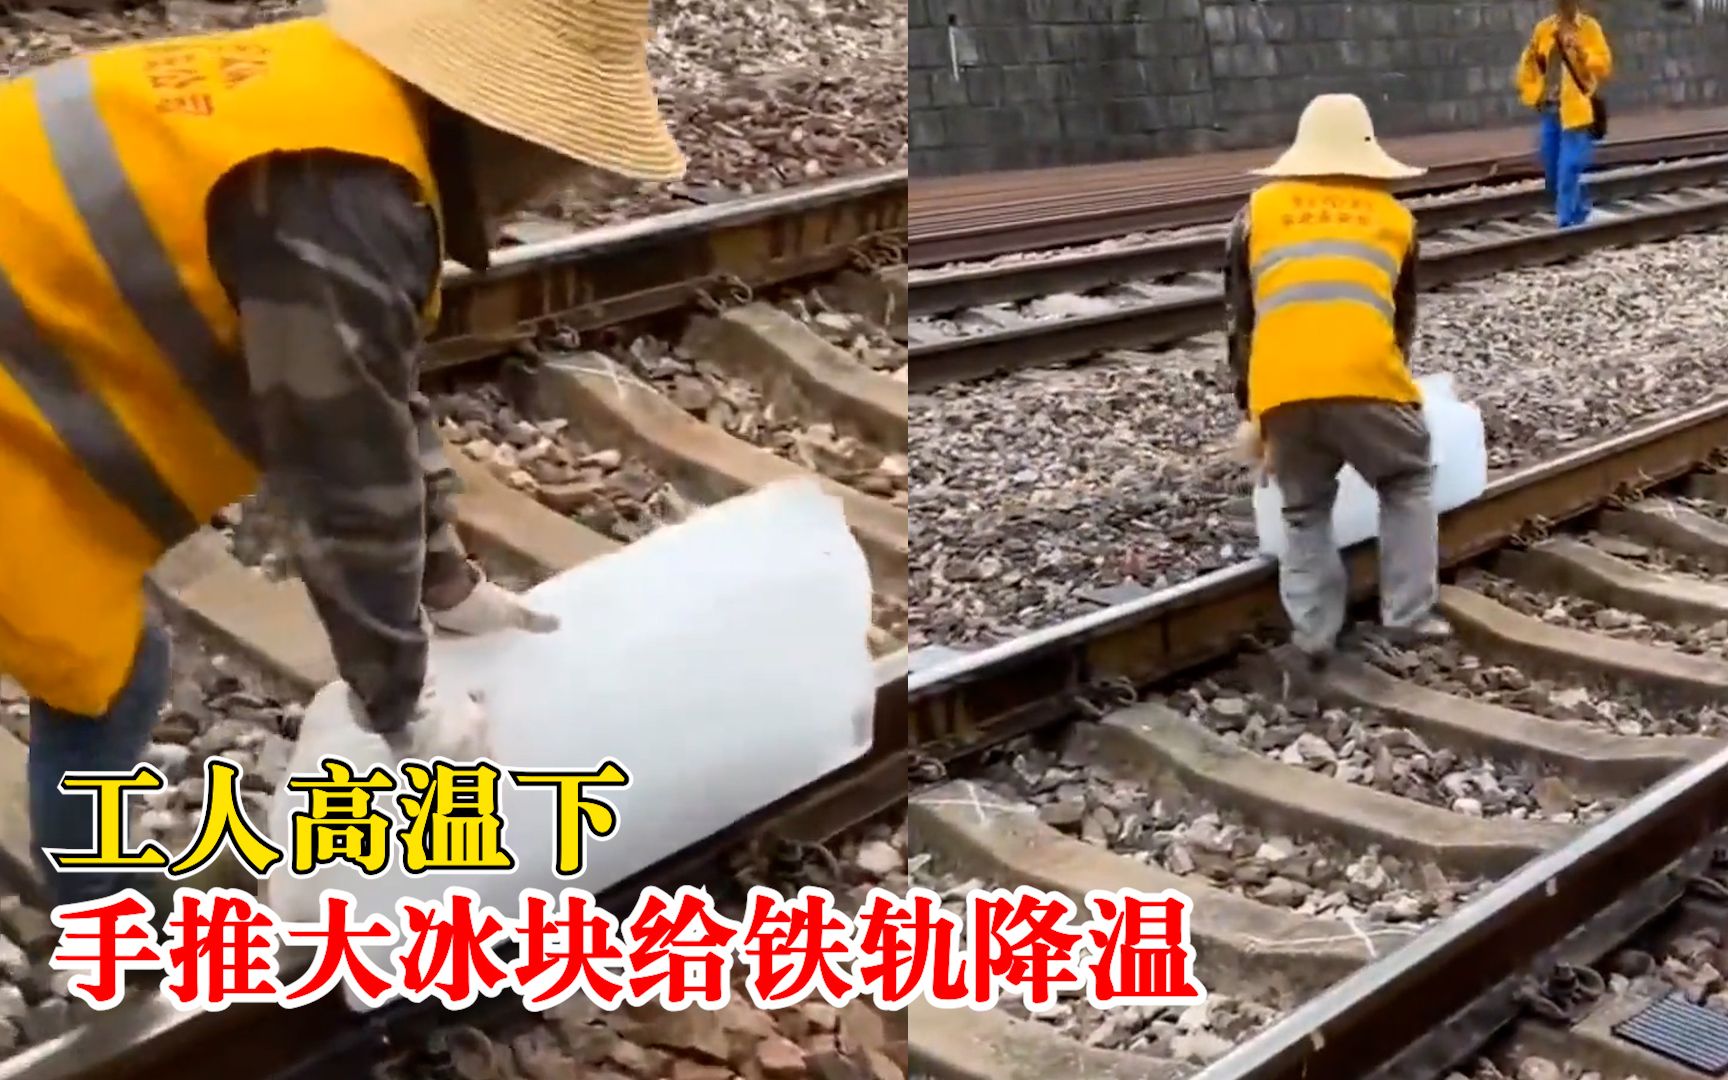 工人高温下手推大冰块给铁轨降温，拍摄者：防止铁轨变形，很辛苦